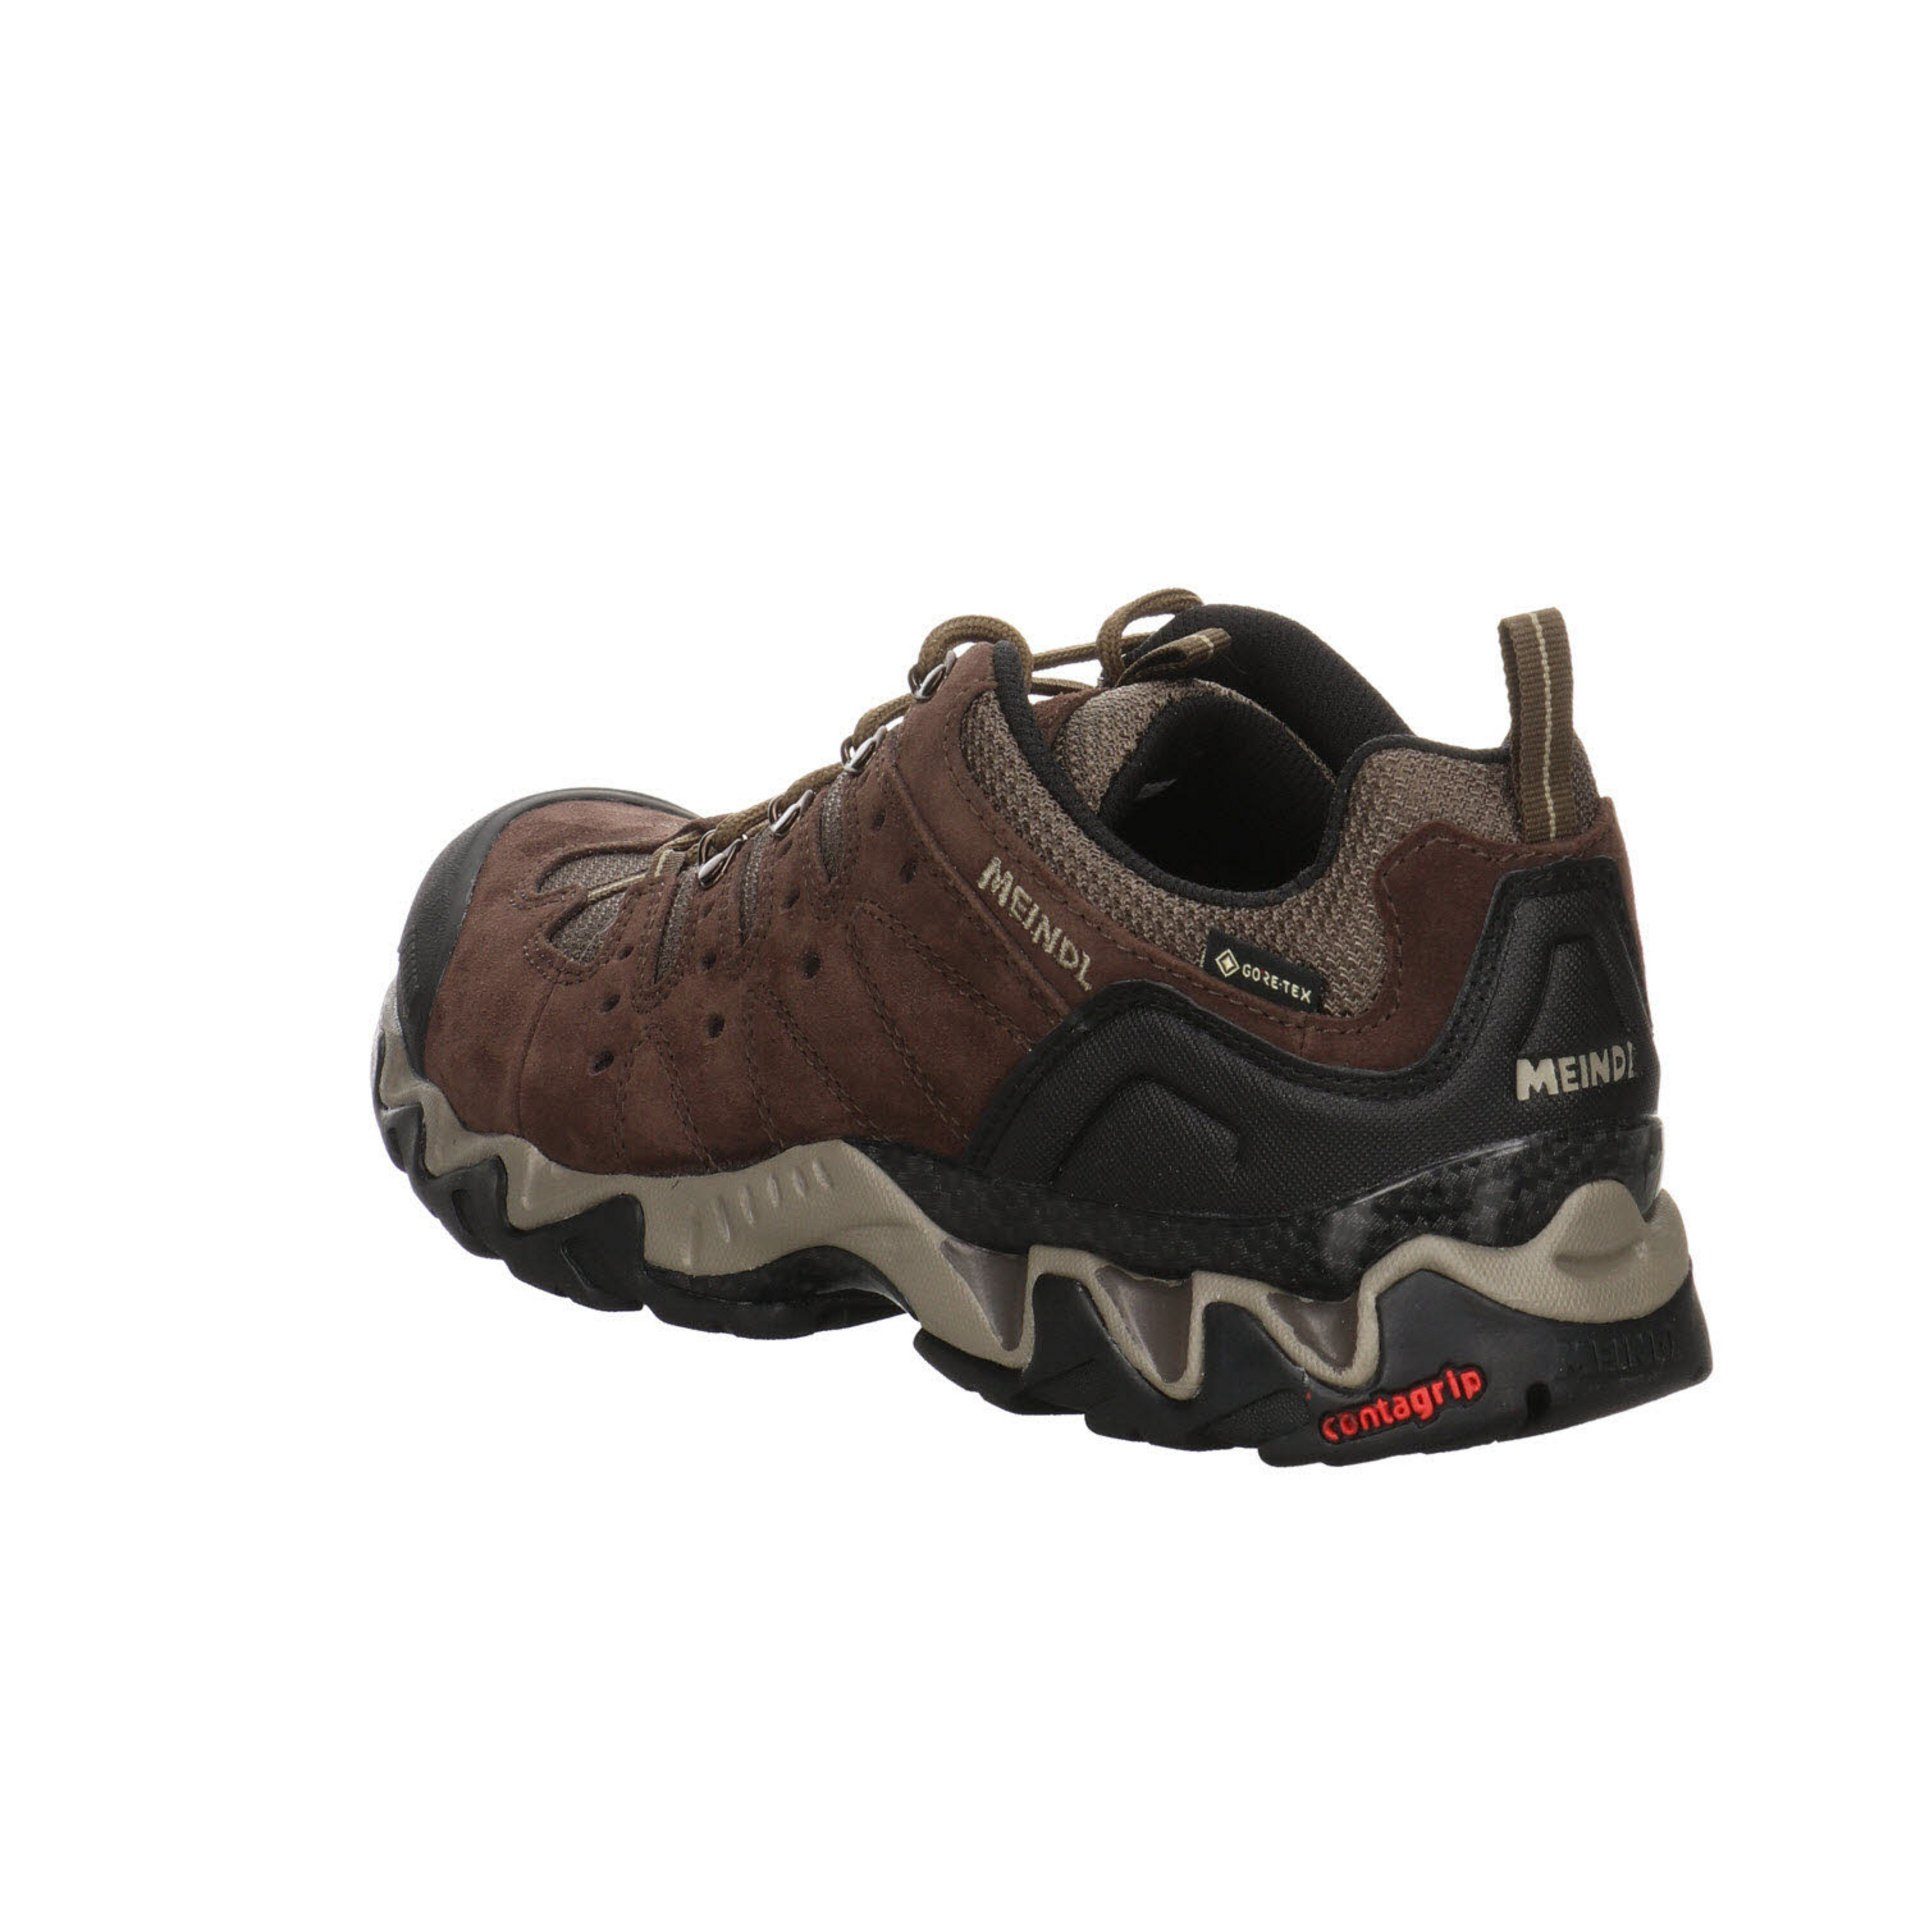 Meindl Herren dunkel Schuhe Leder-/Textilkombination braun Outdoor Outdoorschuh GTX Outdoorschuh Portland